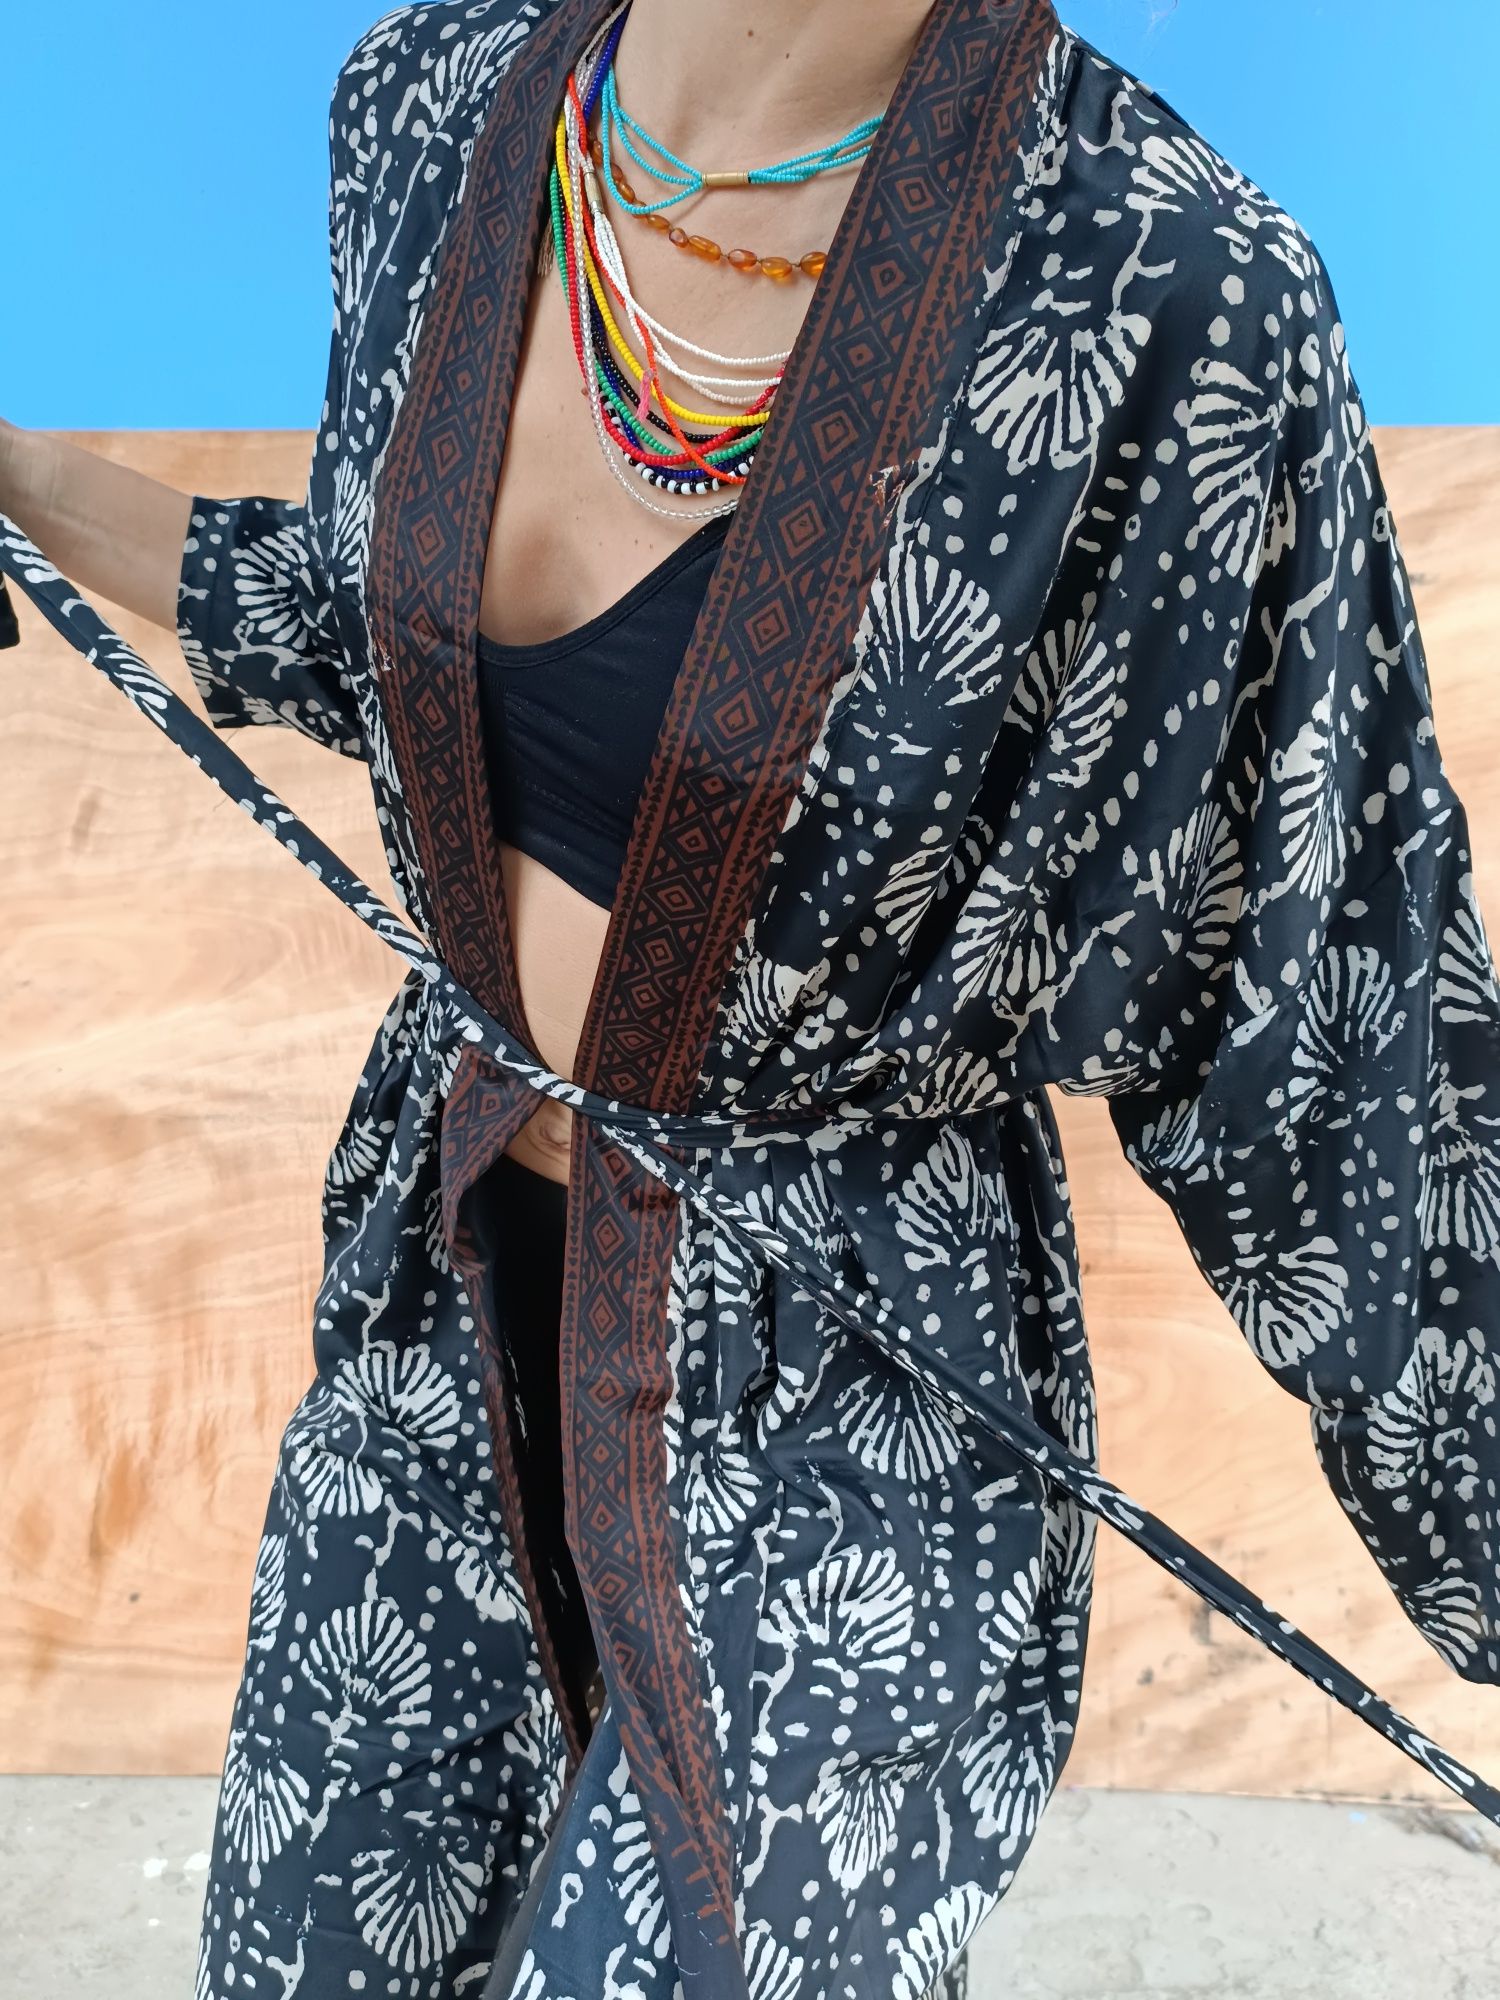 Kimono narzutka plażowa szlafrok